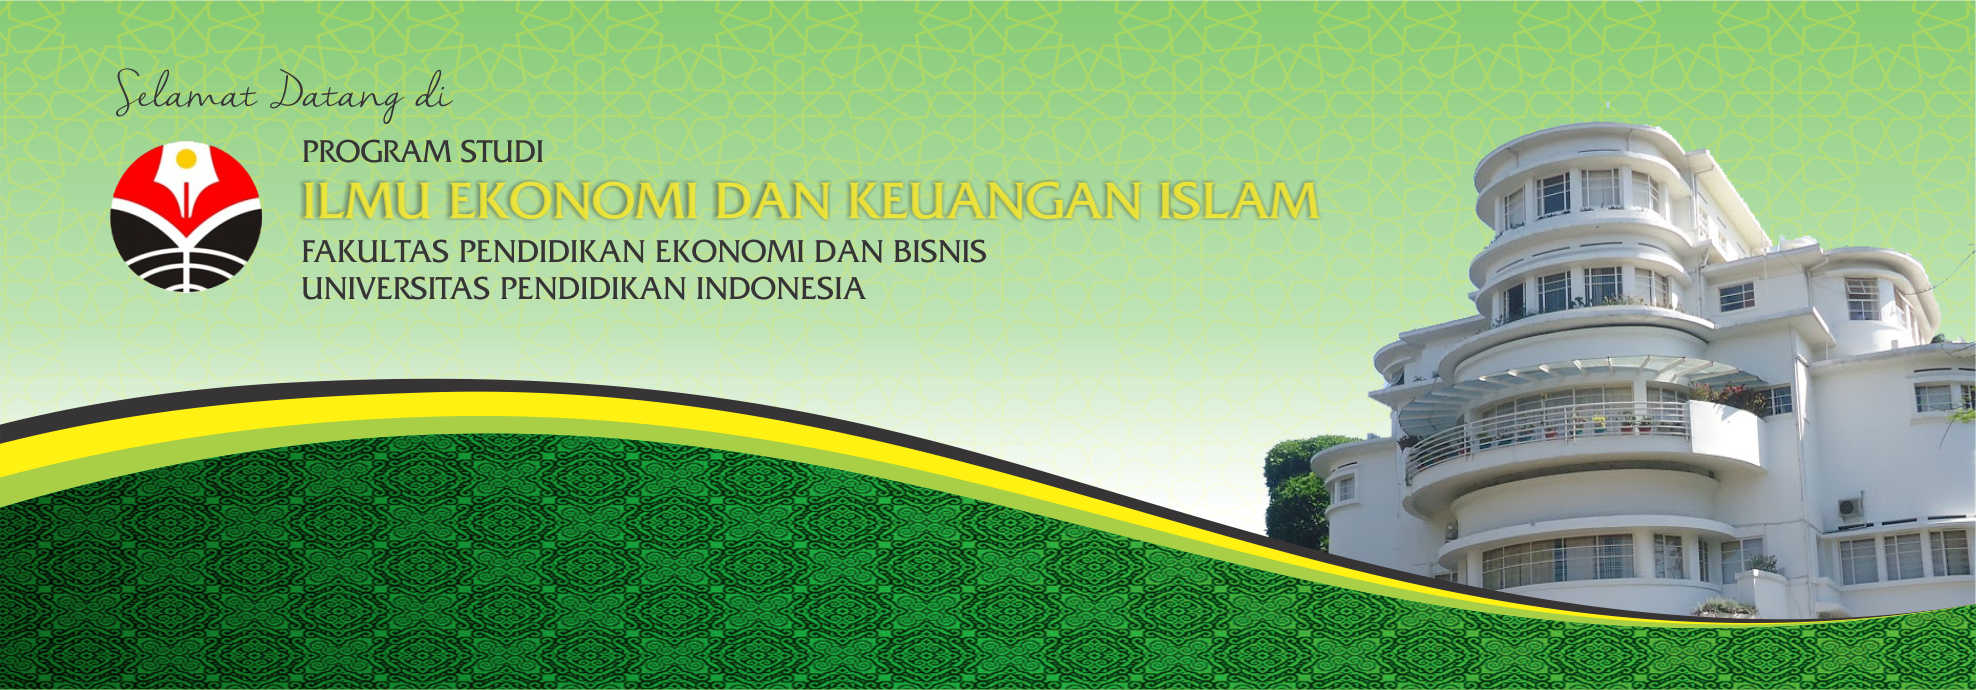 Prodi Ilmu Ekonomi dan Keuangan Islam